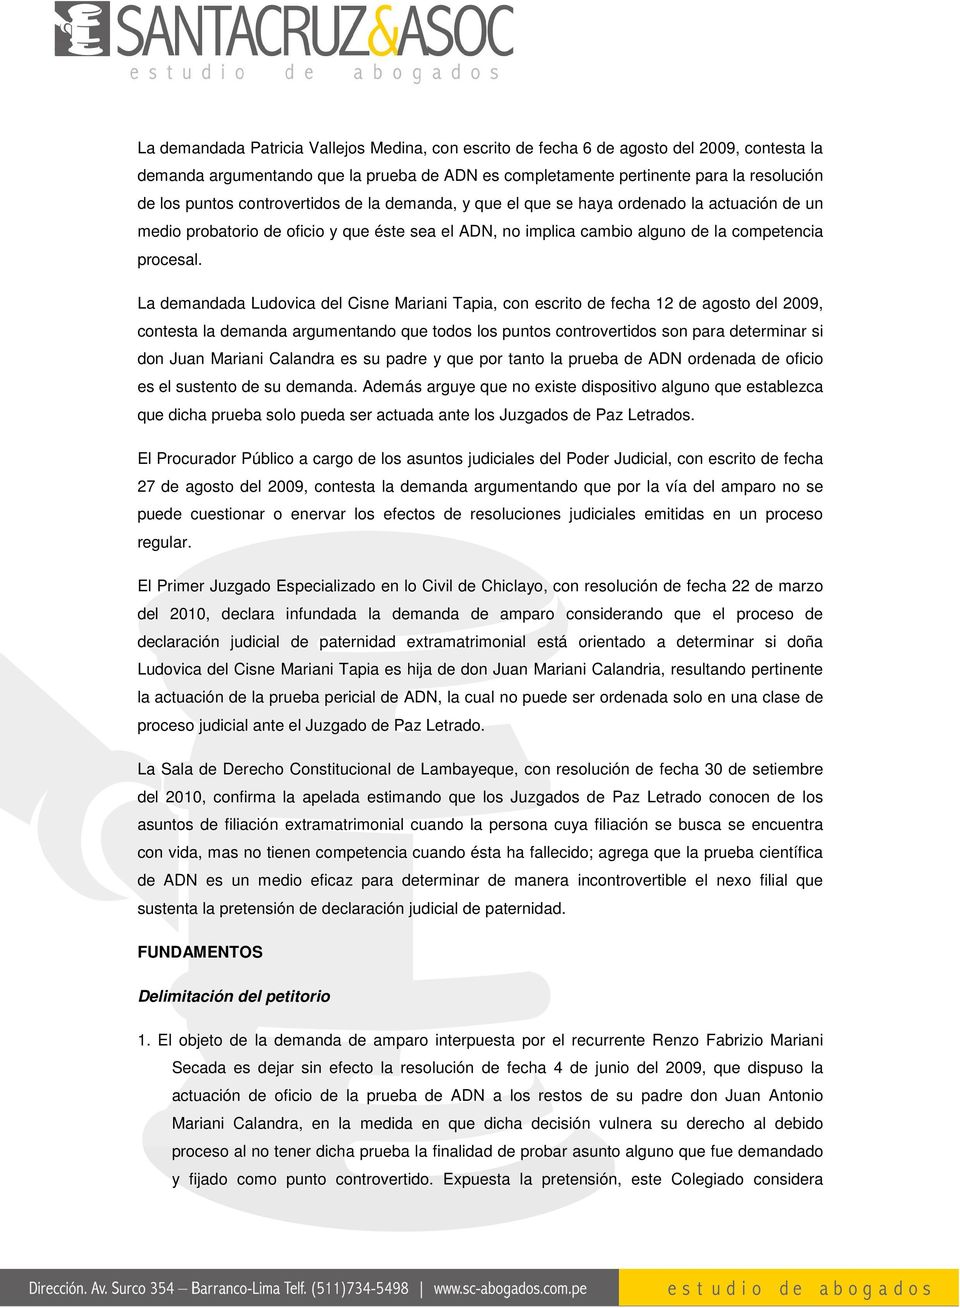 La demandada Ludovica del Cisne Mariani Tapia, con escrito de fecha 12 de agosto del 2009, contesta la demanda argumentando que todos los puntos controvertidos son para determinar si don Juan Mariani